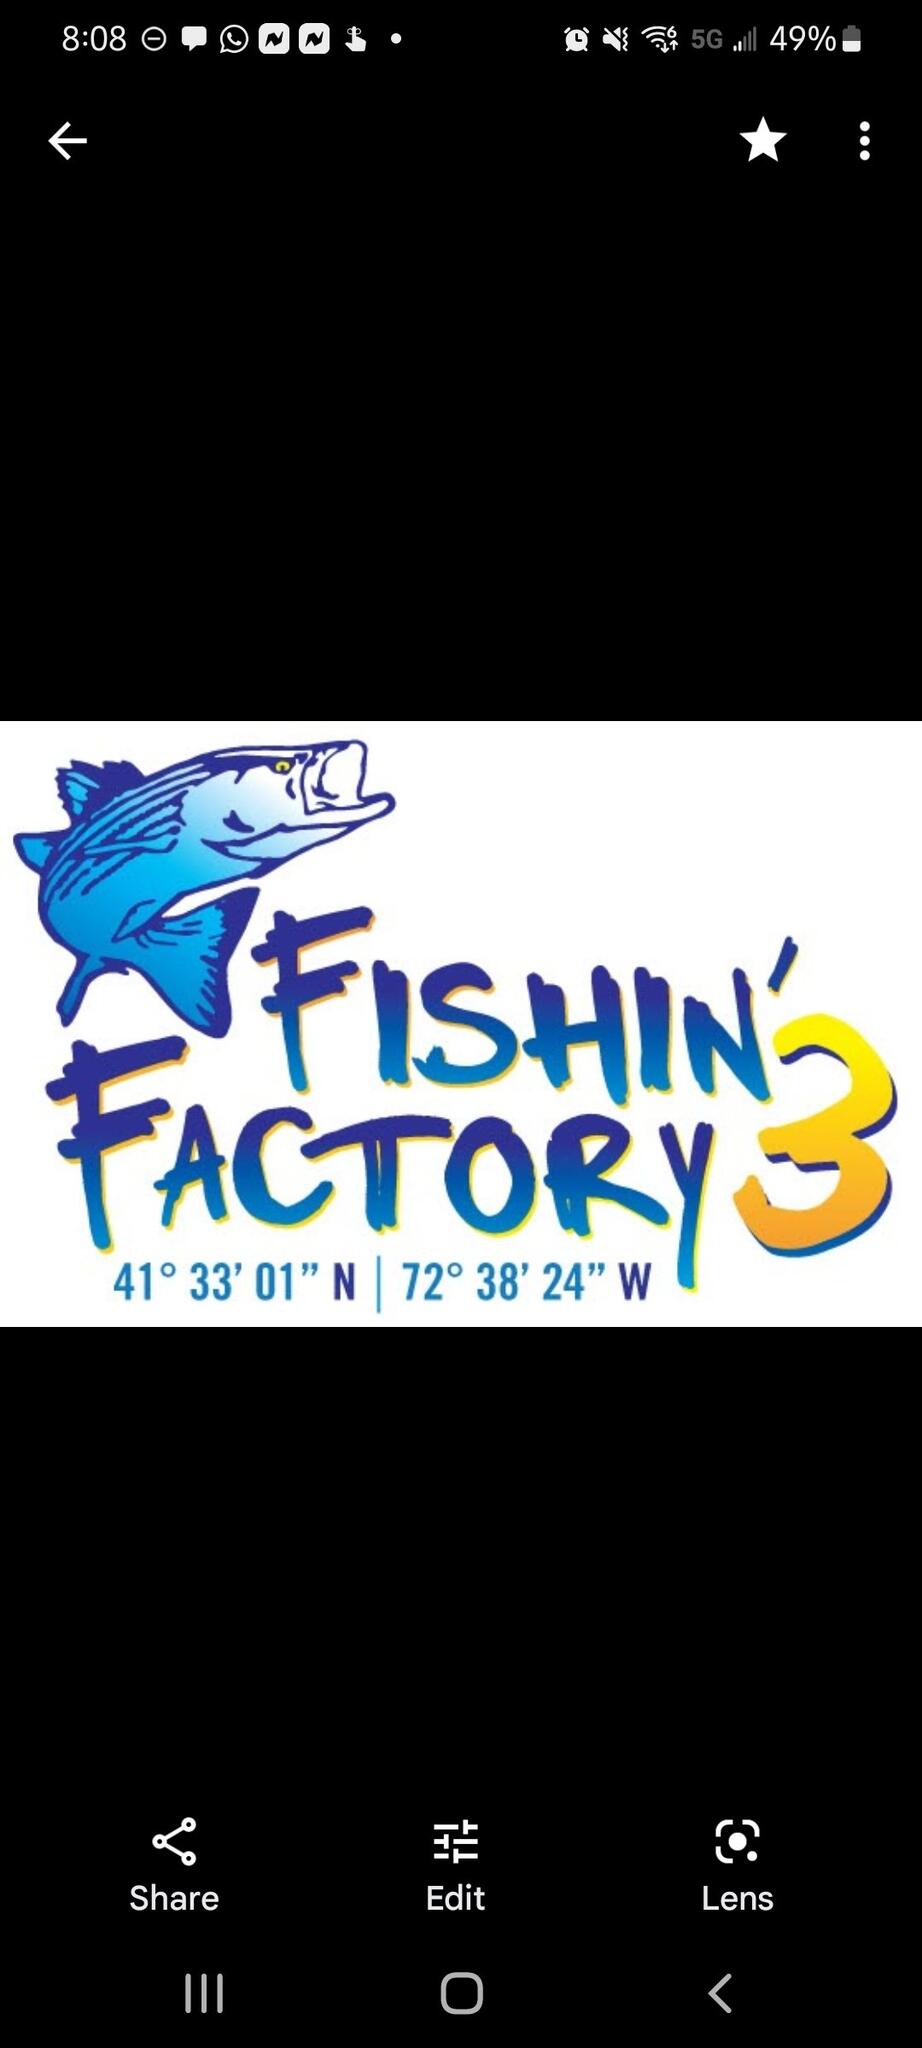 Fishin Factory III - Middletown, CT - Nextdoor